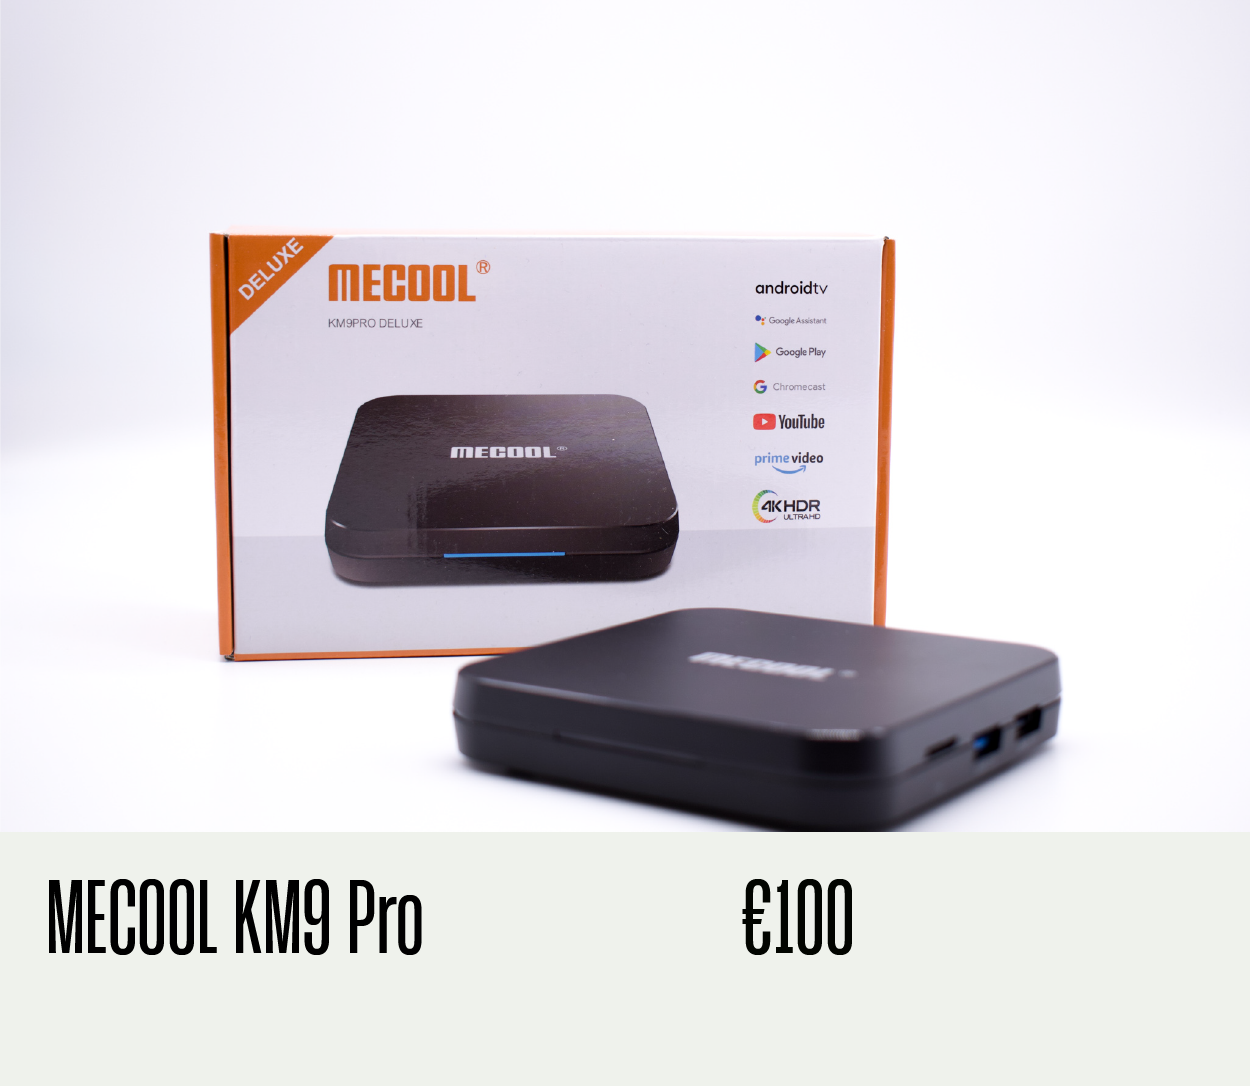 MeCool KM9 Pro